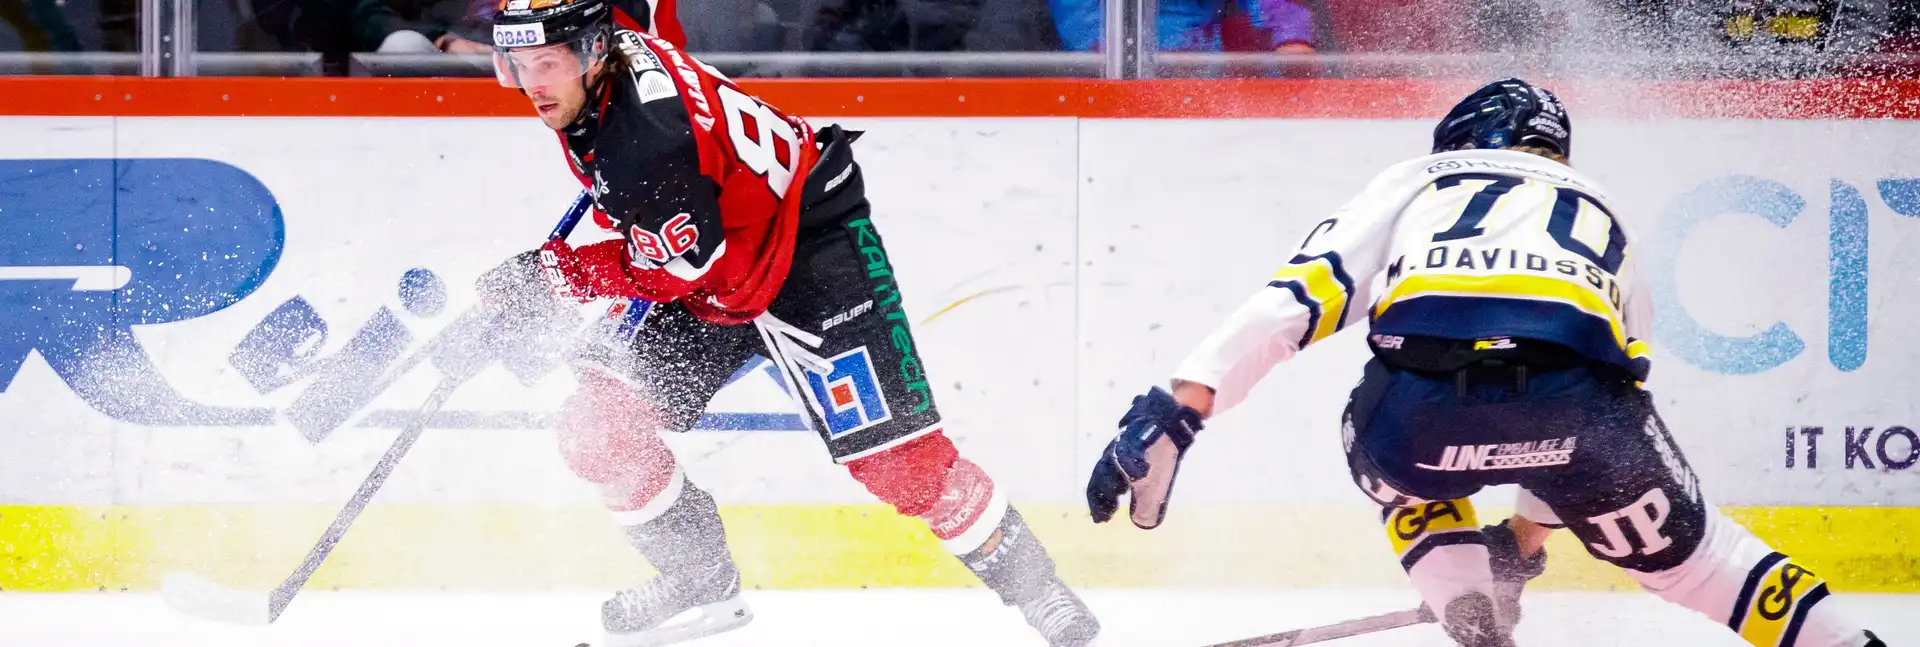 Ishockeymatch mellan HV71 och Örebro i SHL